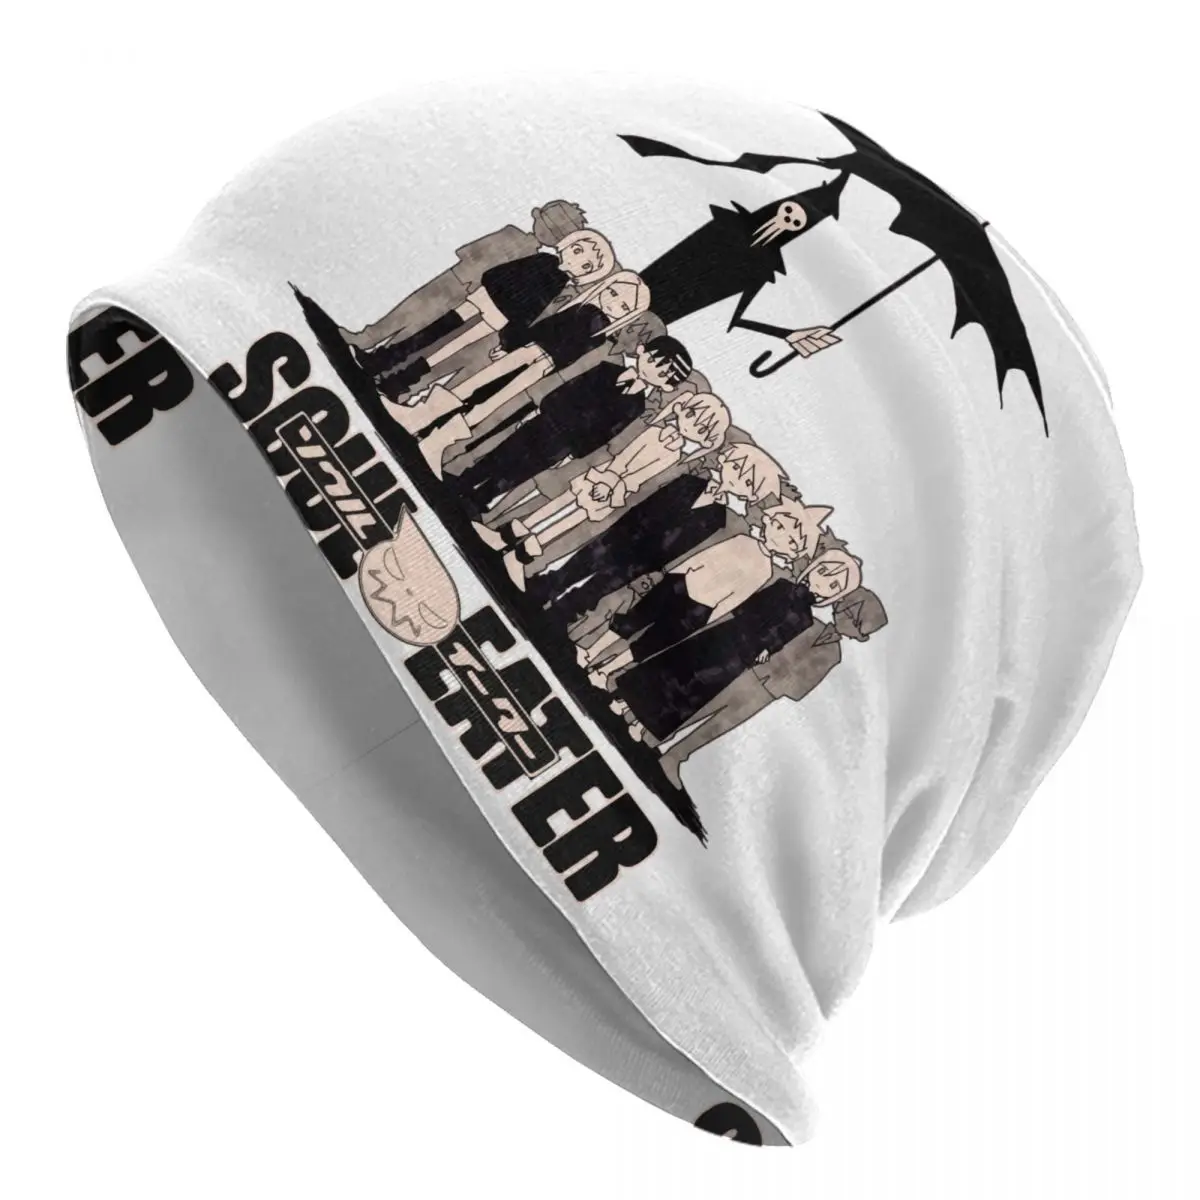 

Soul Eater Skullies Beanies Caps For Men Women Unisex Streetwear Winter Warm Knit Hat Adult Shinigami Death the Kid Bonnet Hats